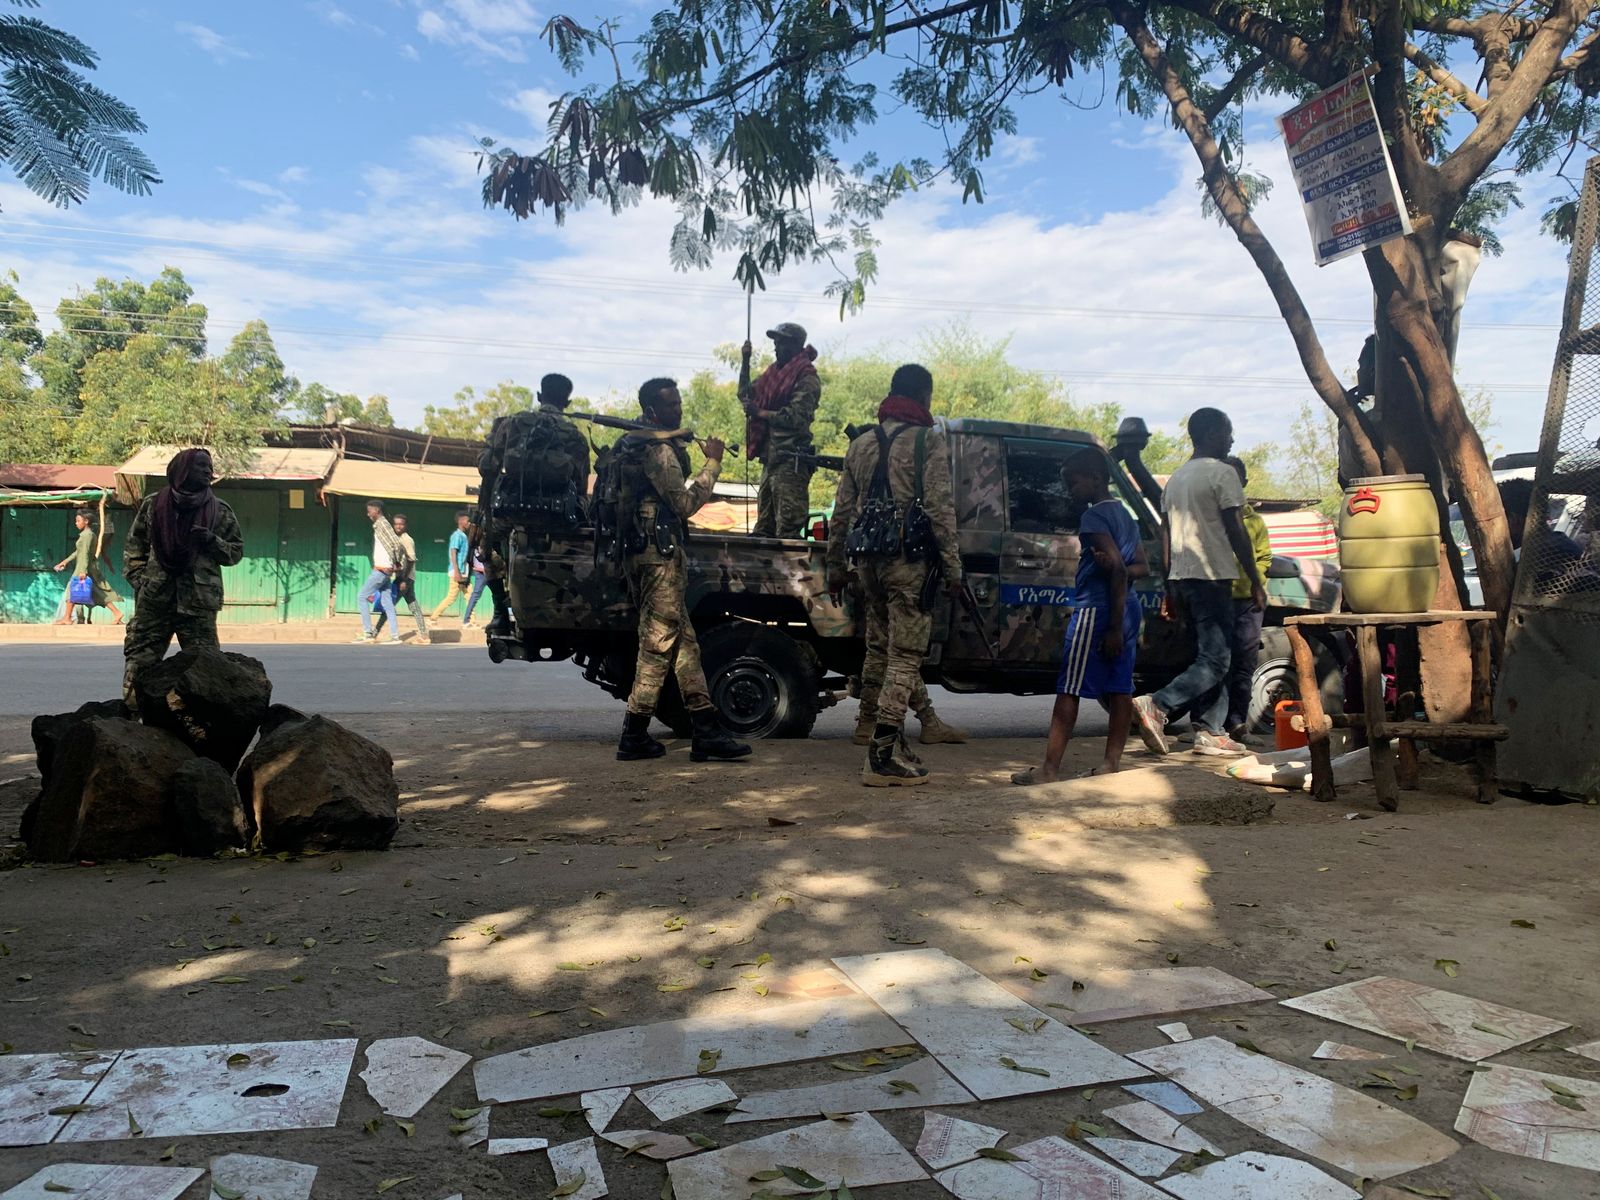 جنود قوات الدفاع الوطني في إثيوبيا في منطقة سانجا المتاخمة لإقليم تيغراي - REUTERS